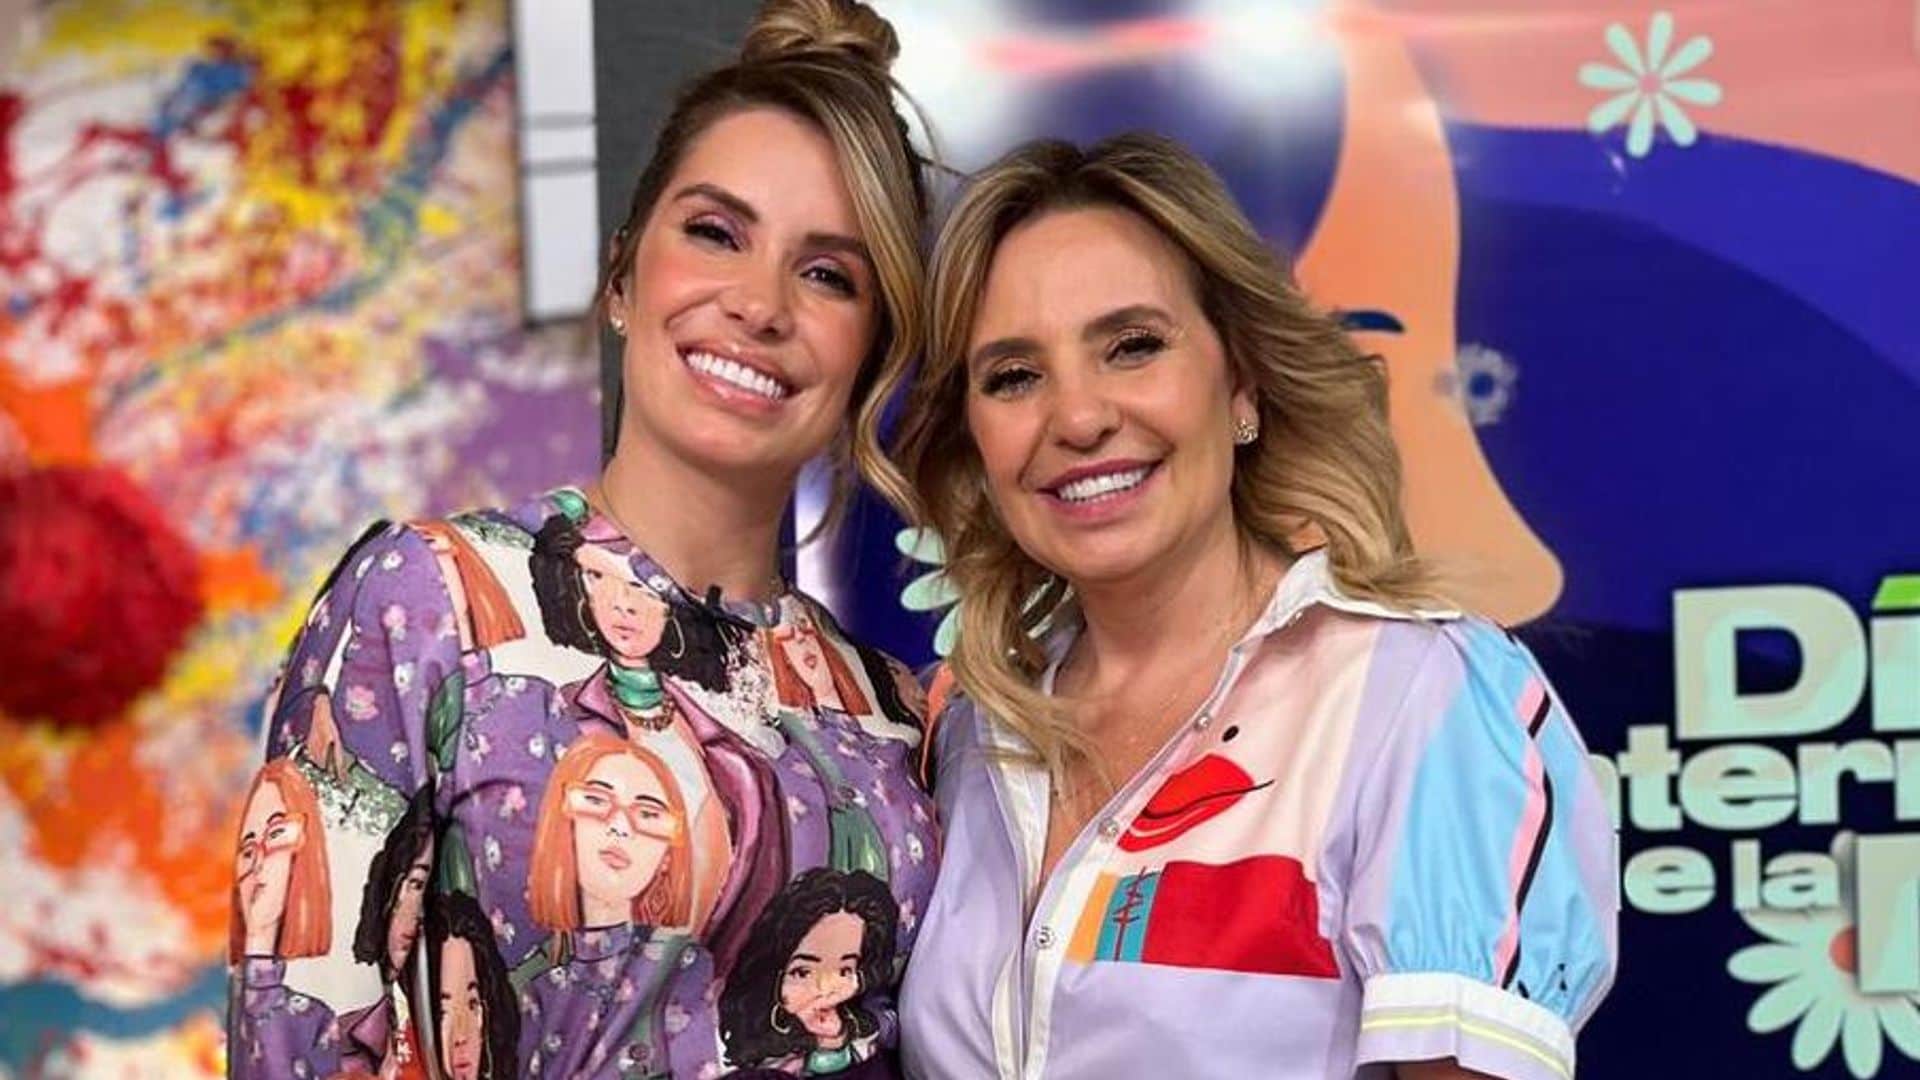 La productora de ‘Hoy’ confirma roce entre Galilea Montijo y Andrea Escalona